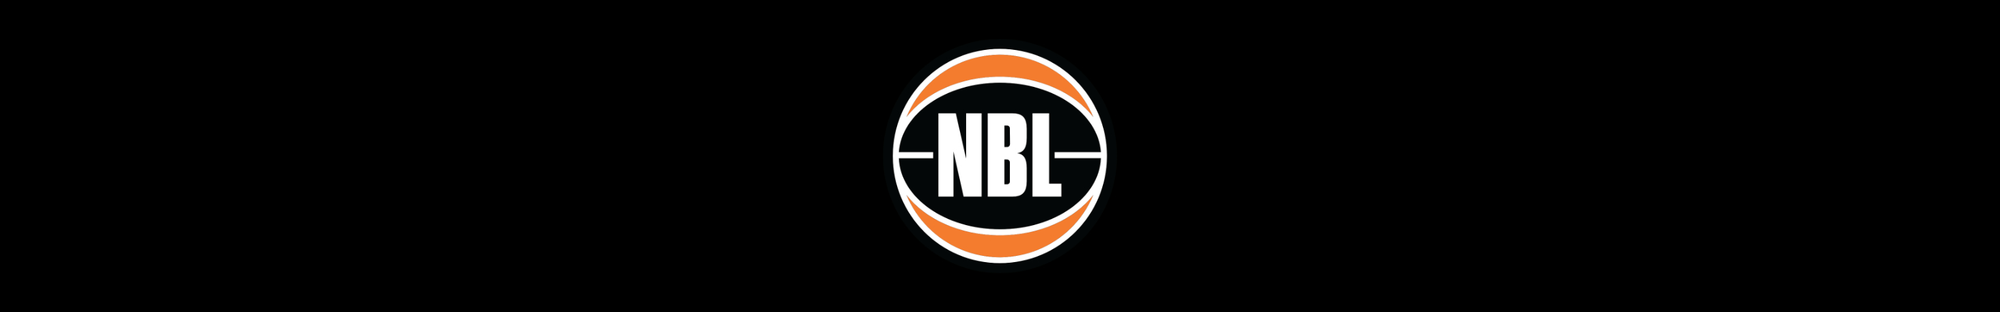 NATIONAL BASKETBALL LEAGUE - WHOLESALE